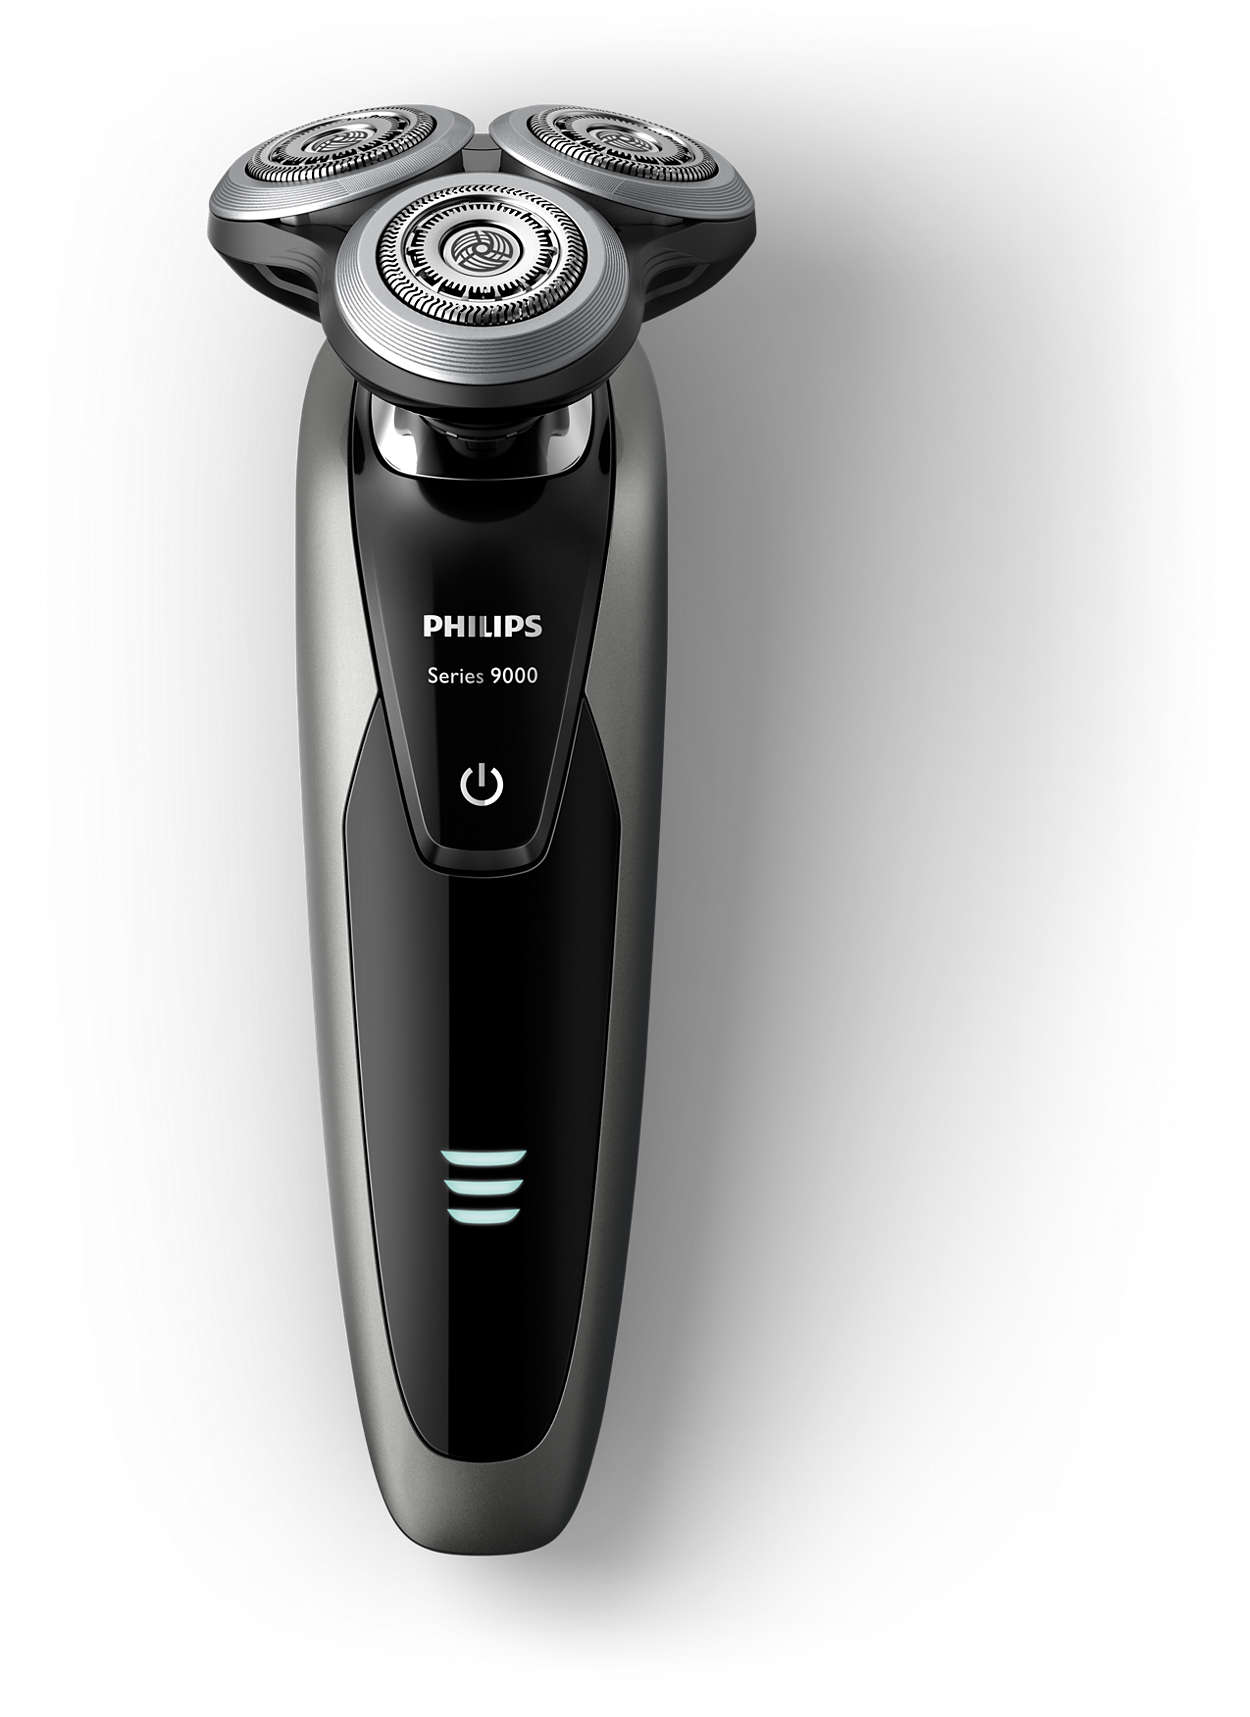 Shaver series 9000 ウェット＆ドライ電気シェーバー S9161/12 | Philips